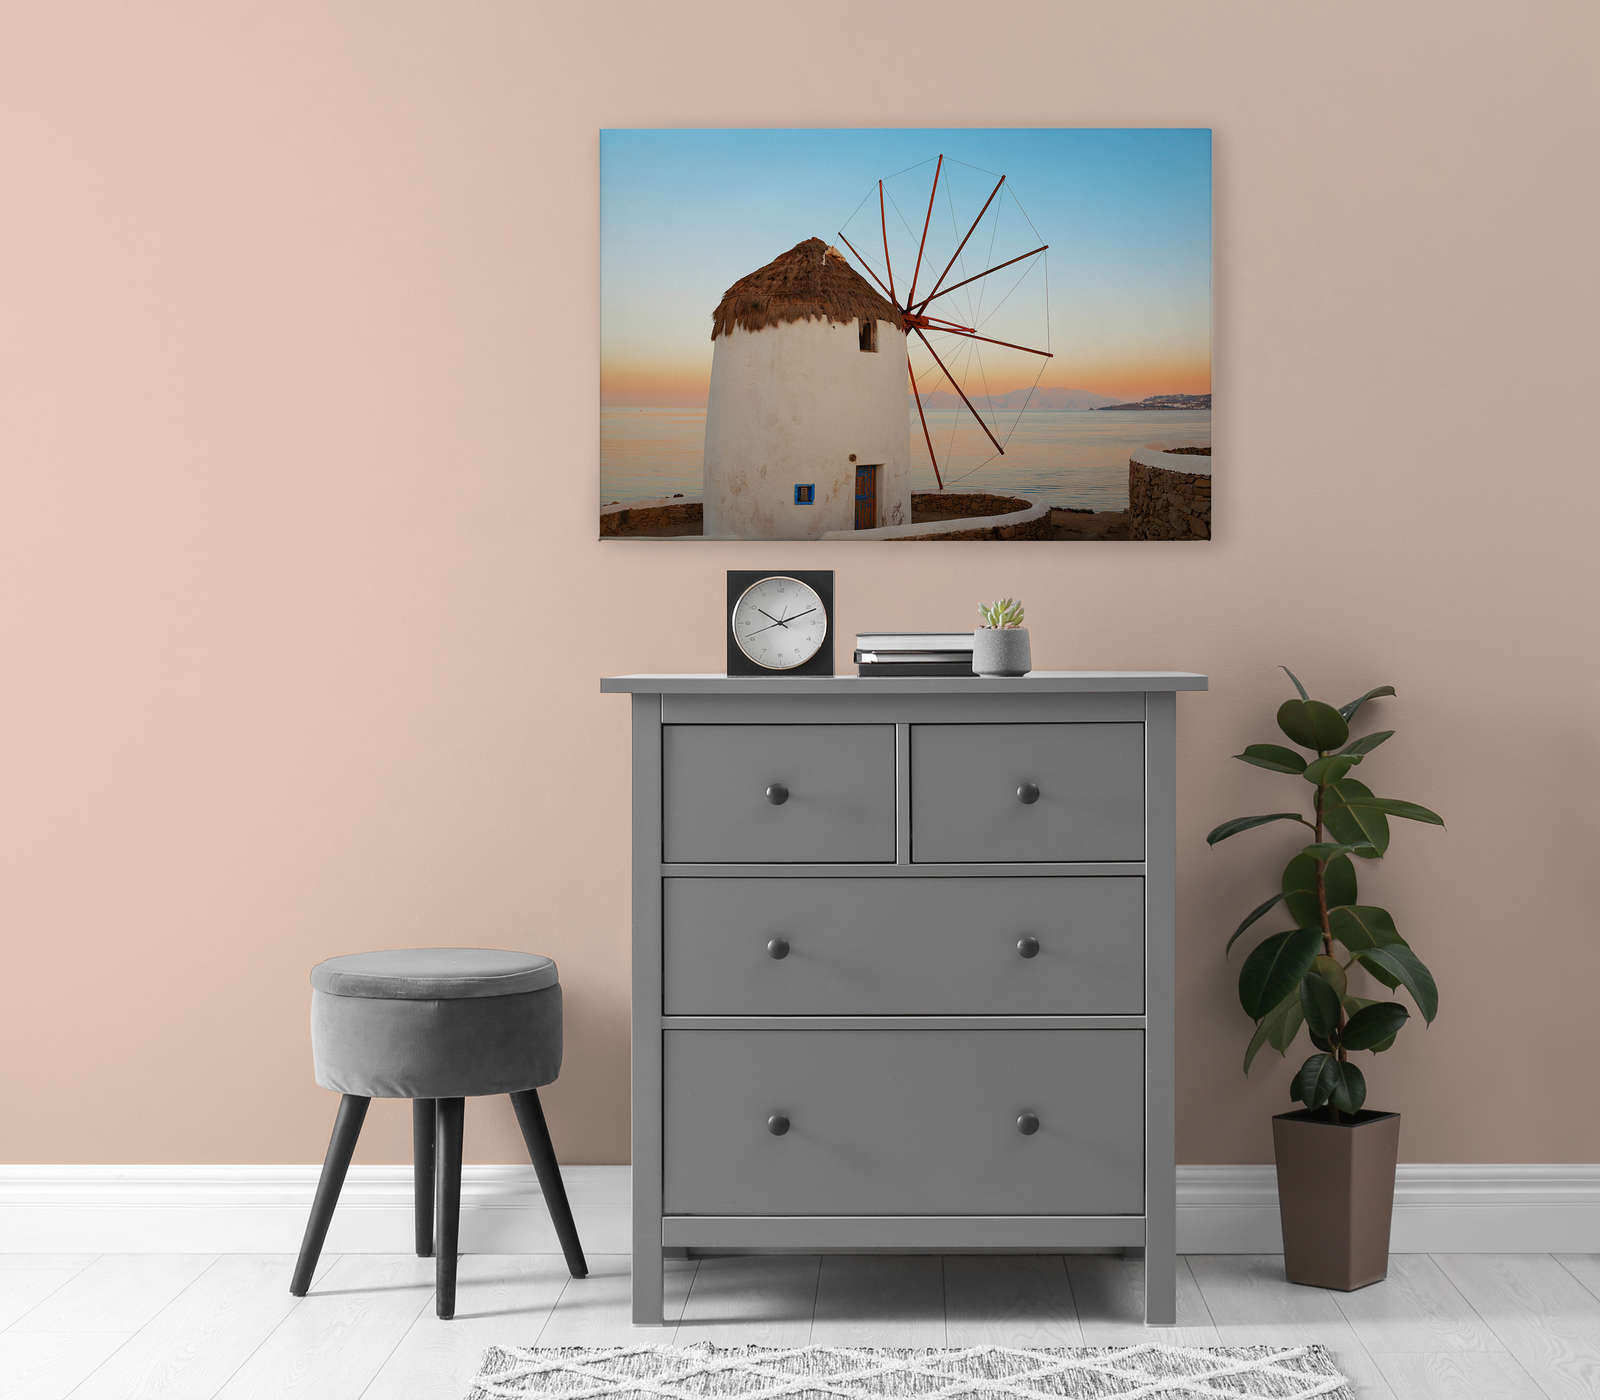             Leinwandbild griechische Windmühle an der Küste – 0,90 m x 0,60 m
        